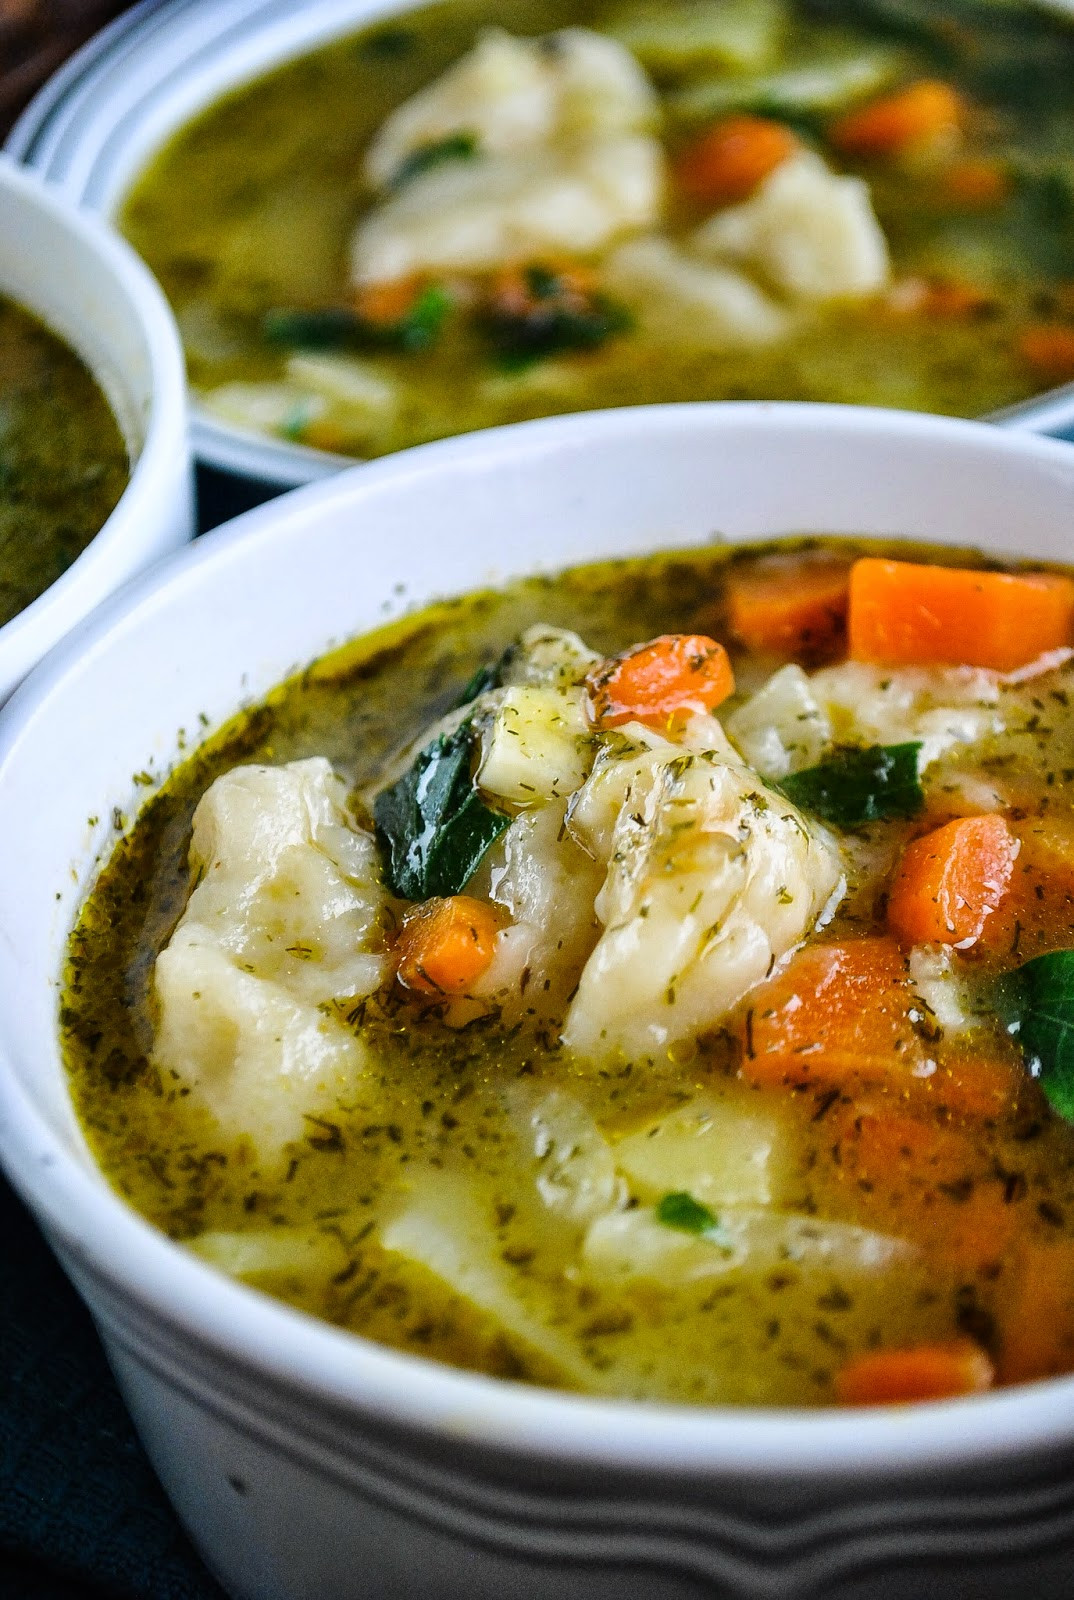 Vegetarian Dumpling Recipes
 Easy ve able and dumpling soup video VeganSandra